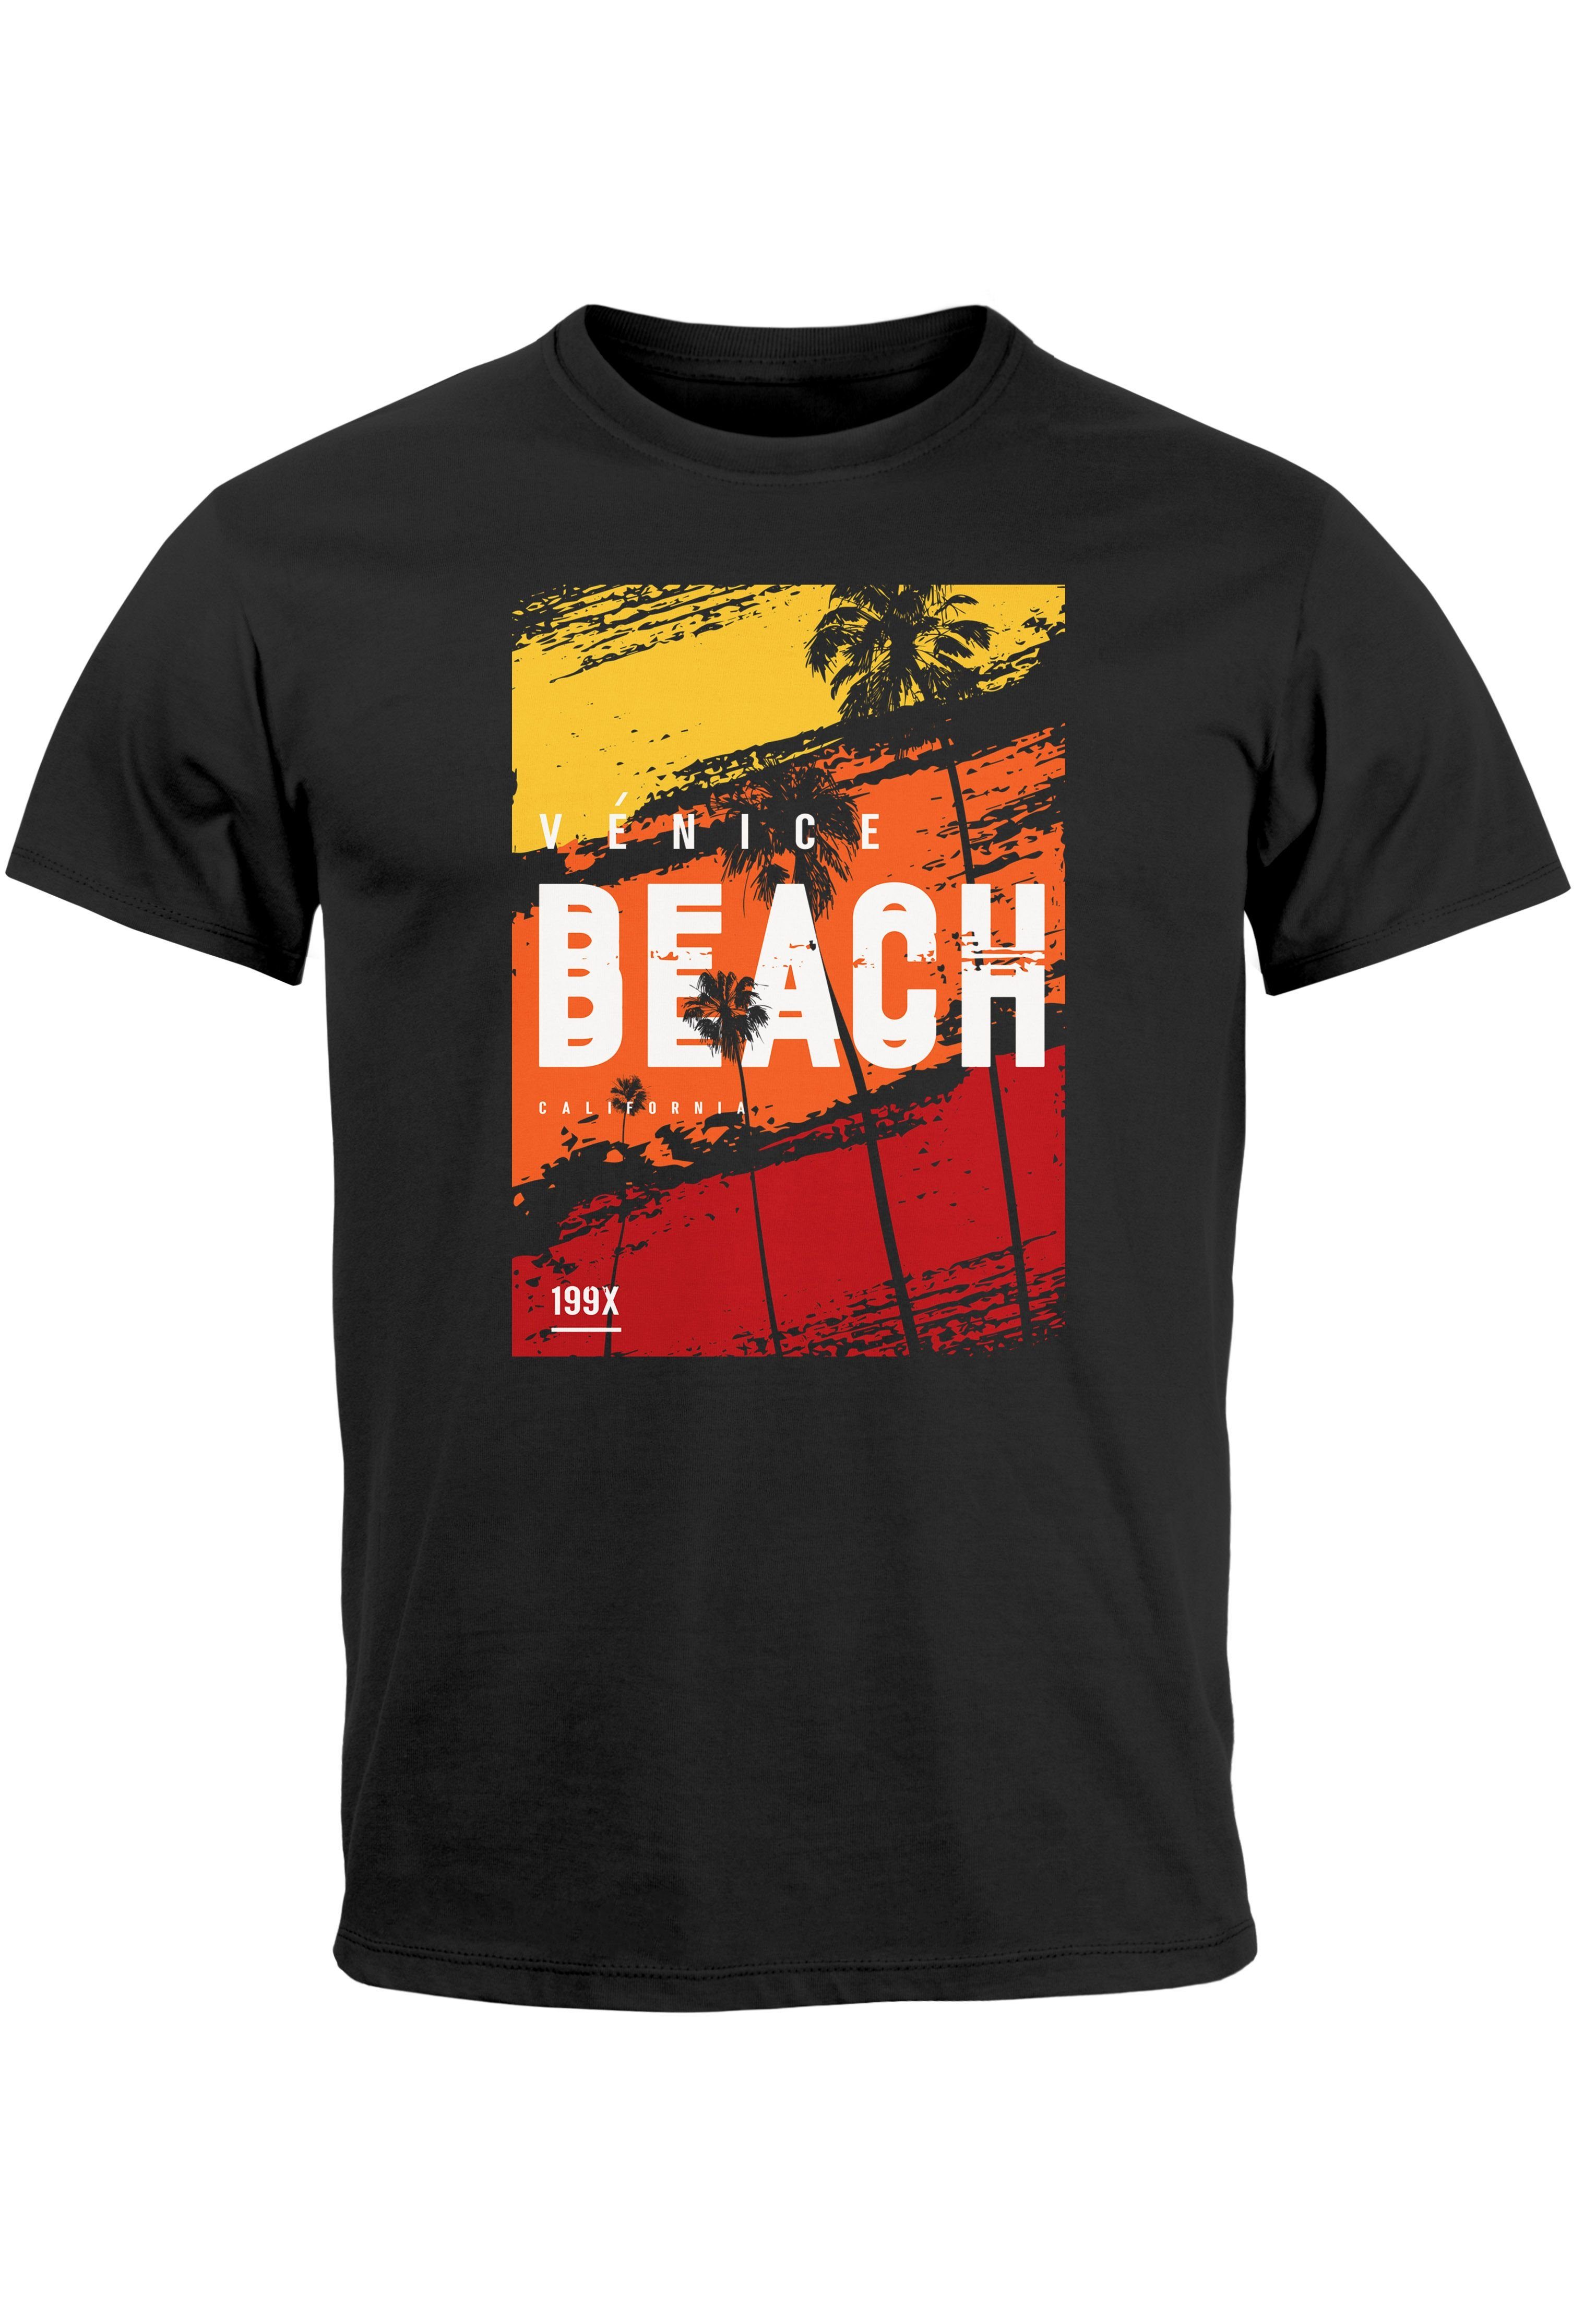 Neverless Print-Shirt Herren T-Shirt Sommer Venice Beach Surfing Motiv Aufdruck Strand Palme mit Print schwarz